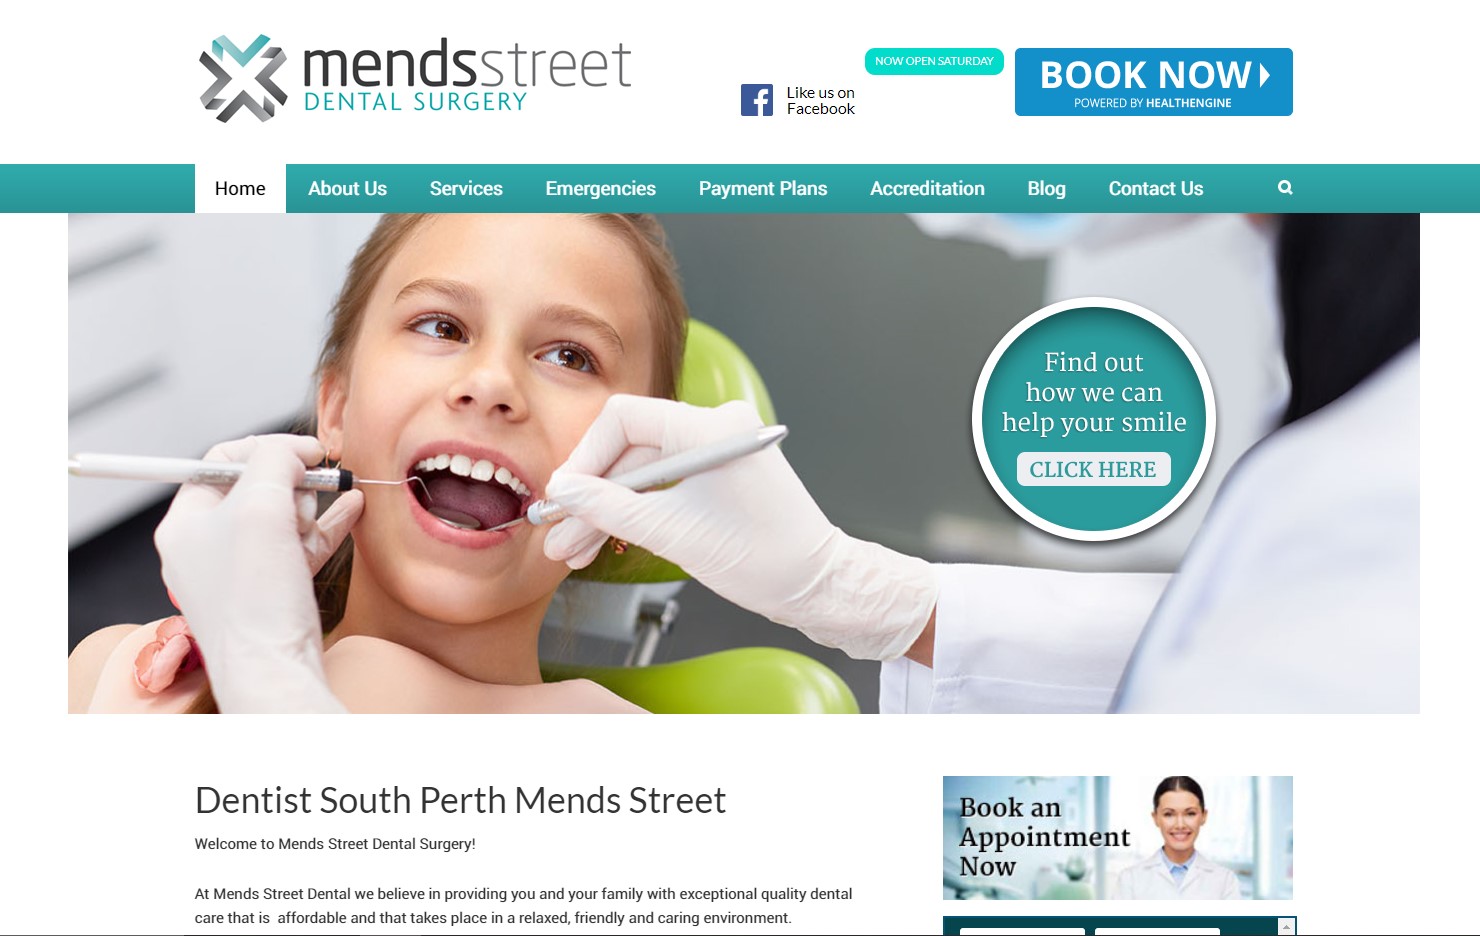 Mends Street Dental Surgery